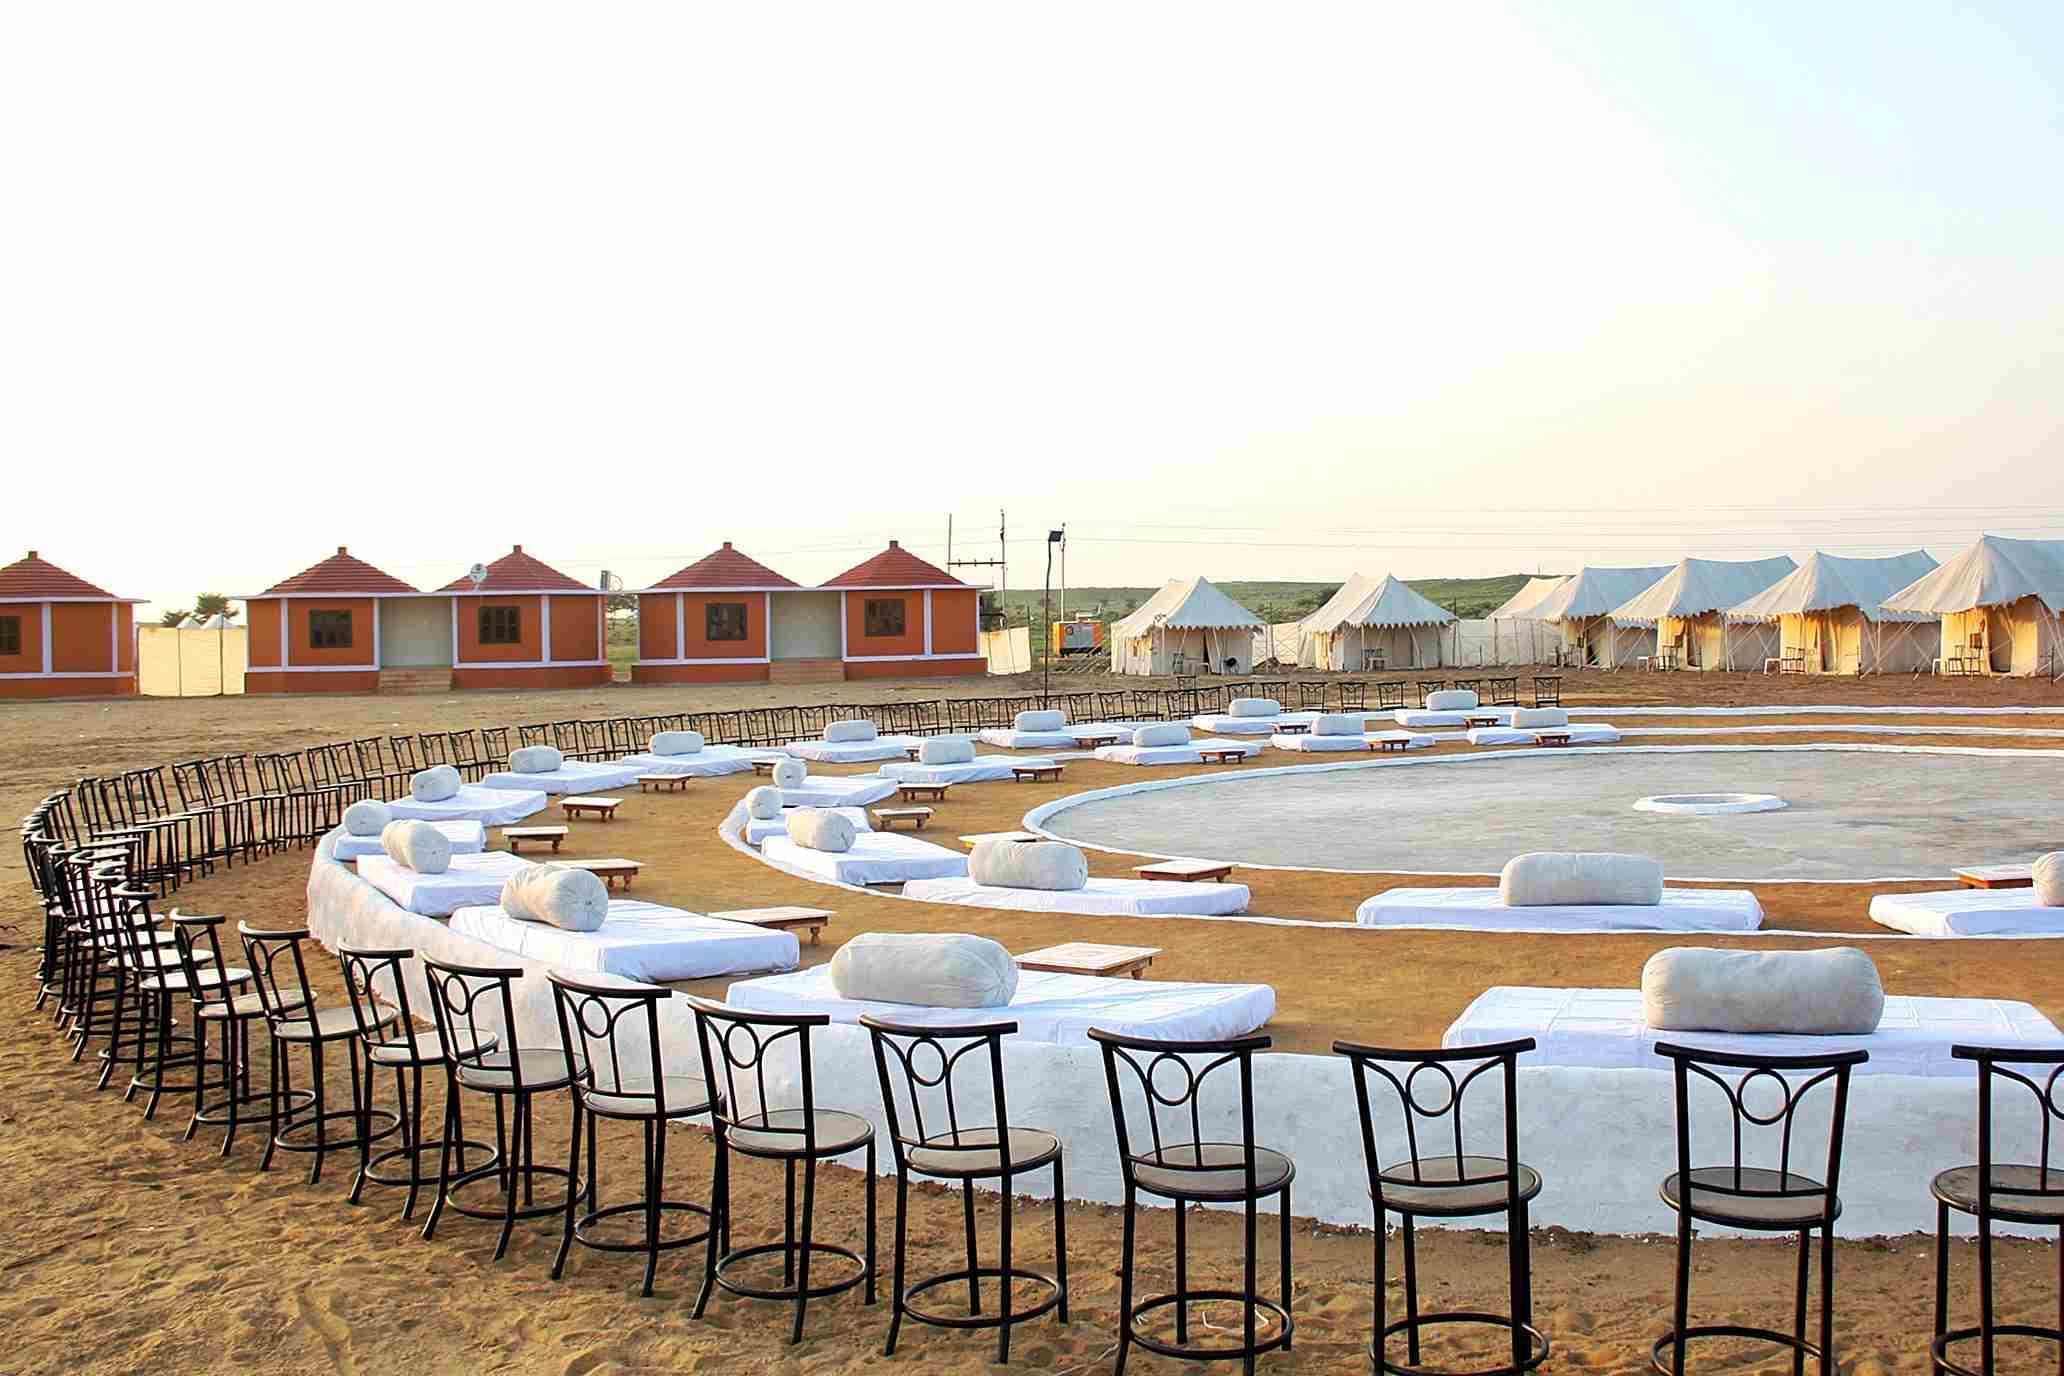 Camping in Jaisalmer - Upto 60% Off